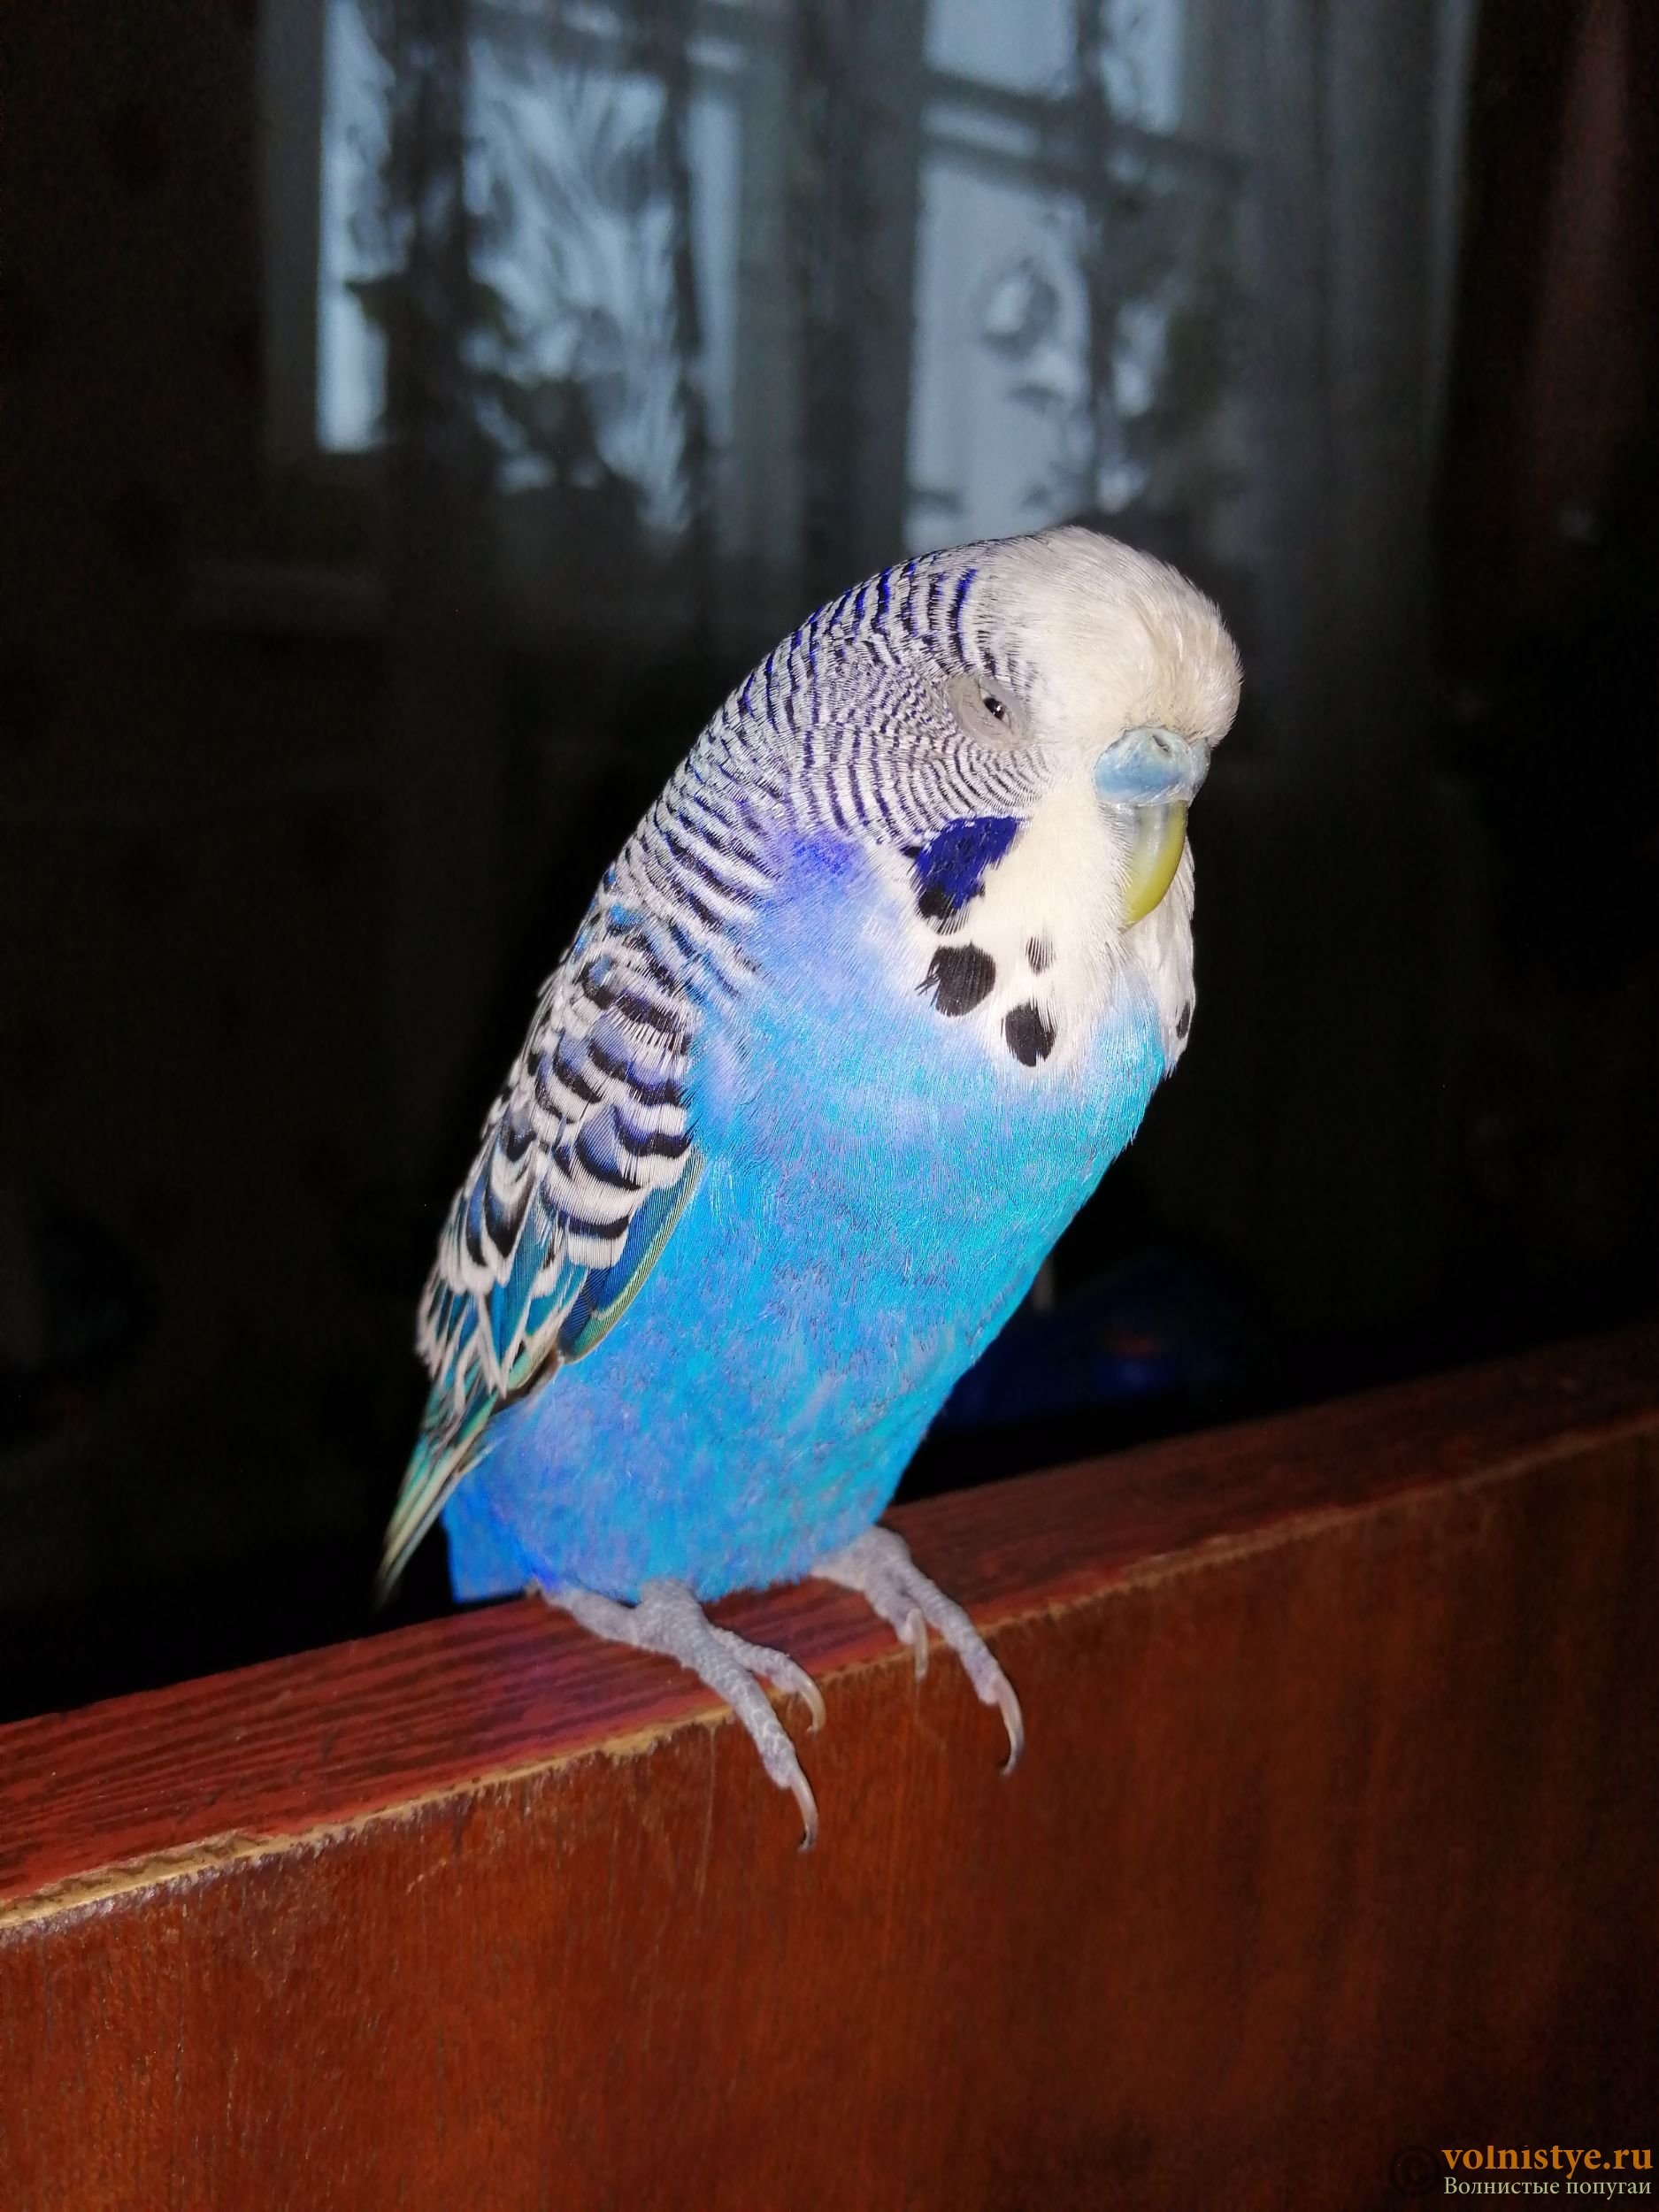 Волнистый попугай дрожит: причины и лечение